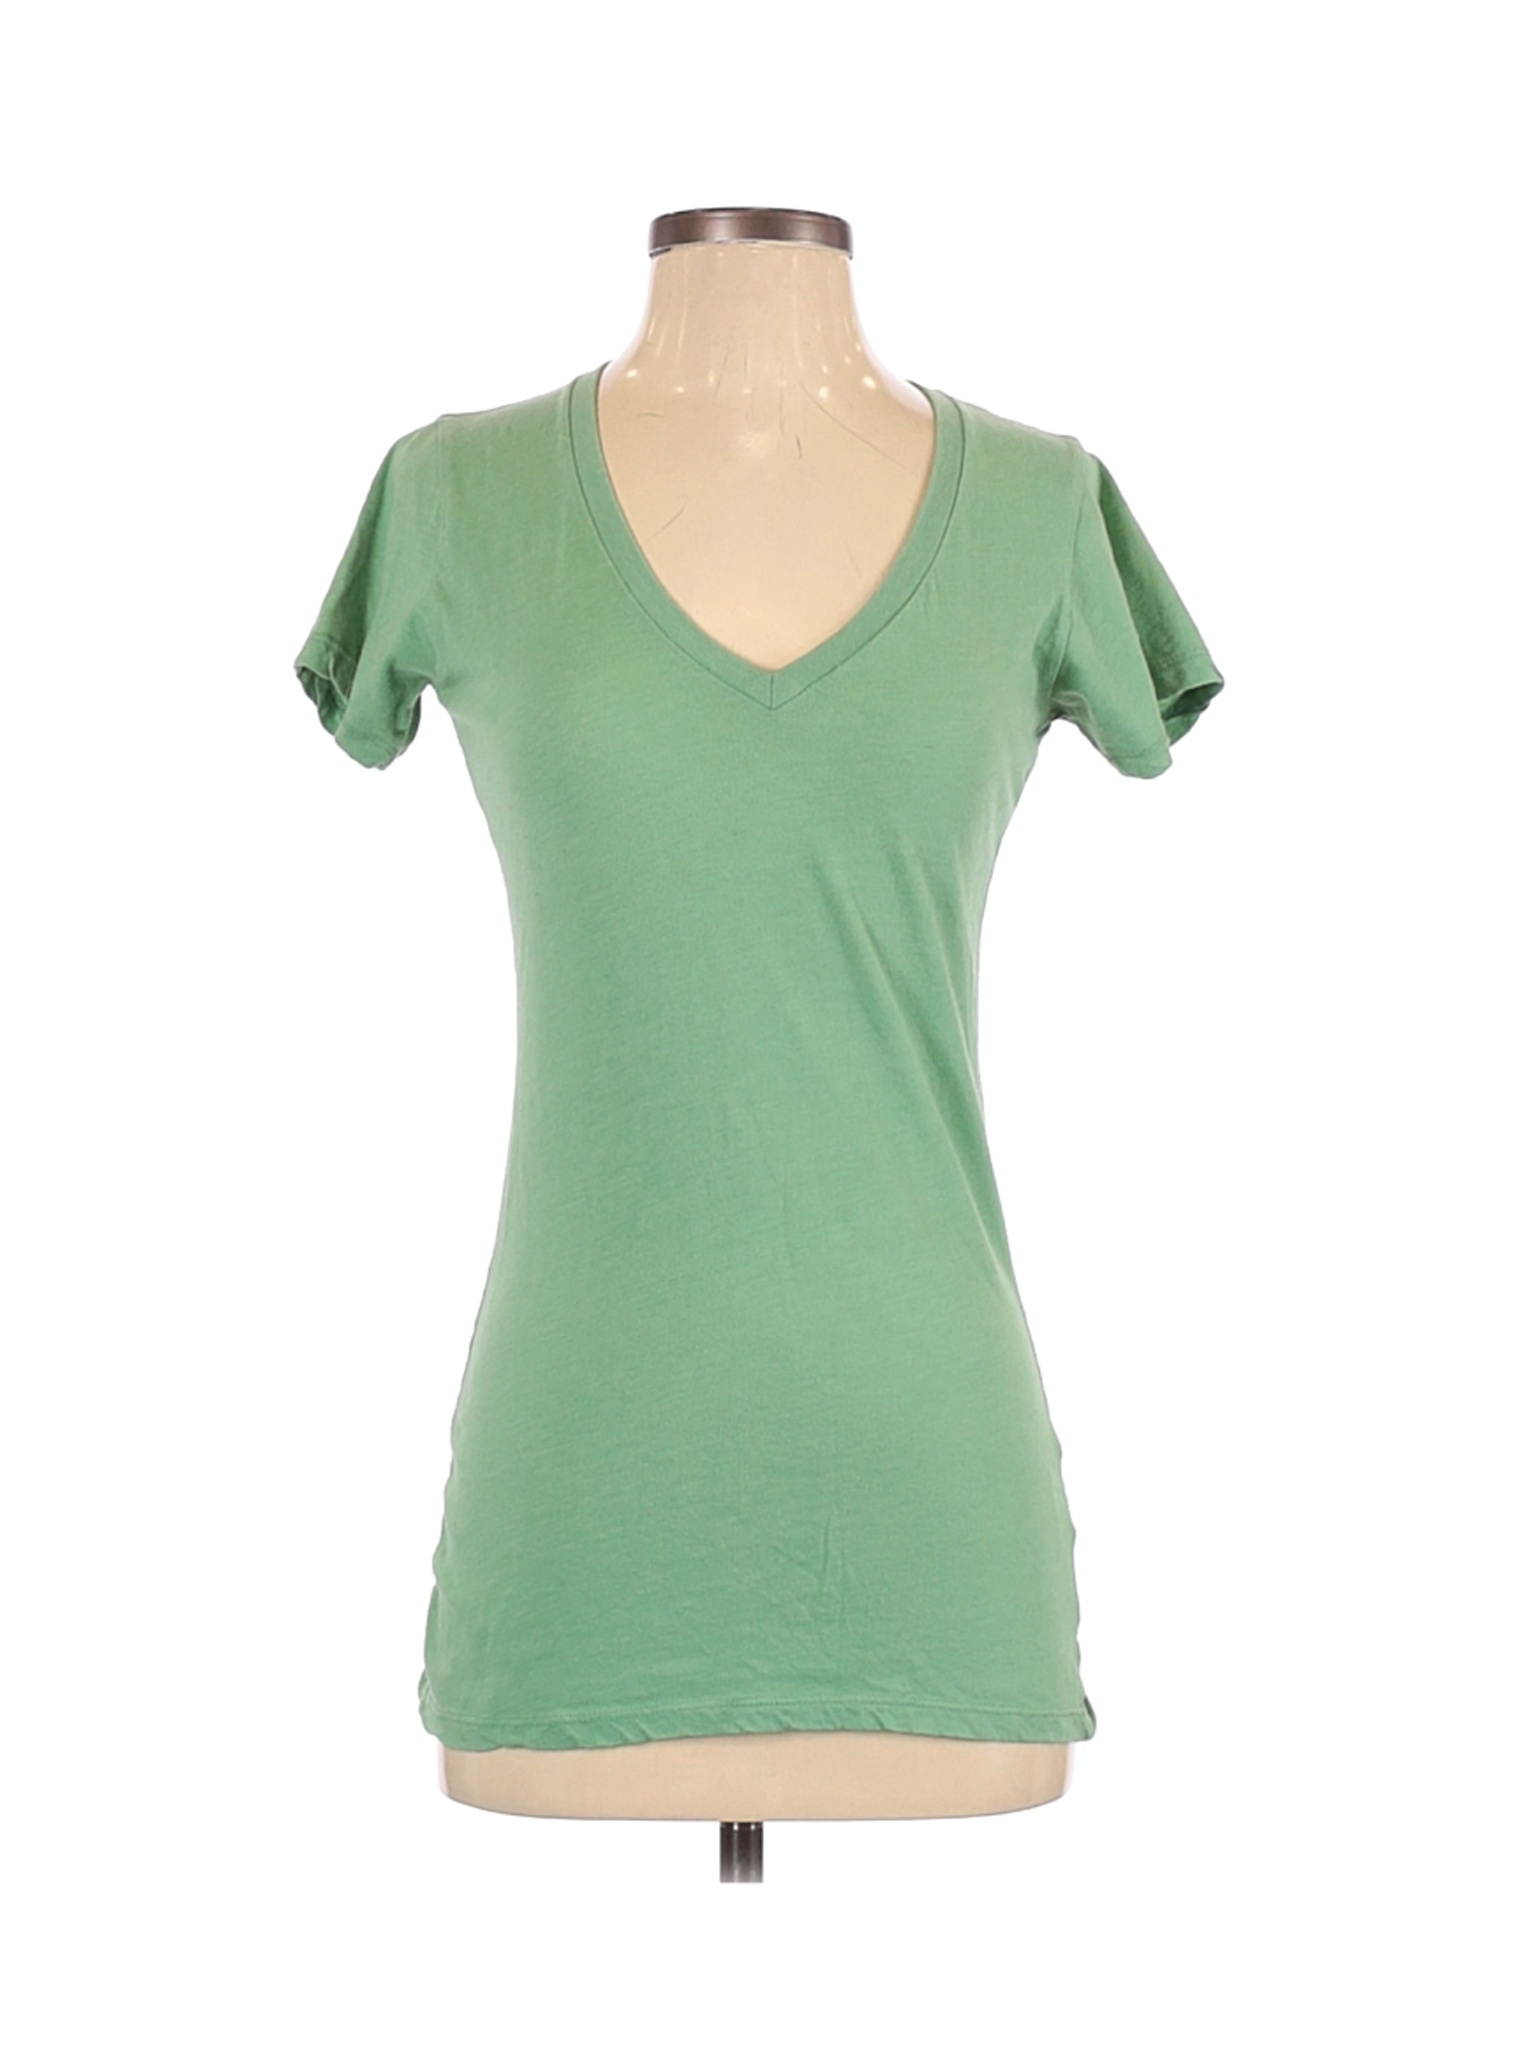 Threads 4 Thought Women Green Short Sleeve T-Shirt S | eBay